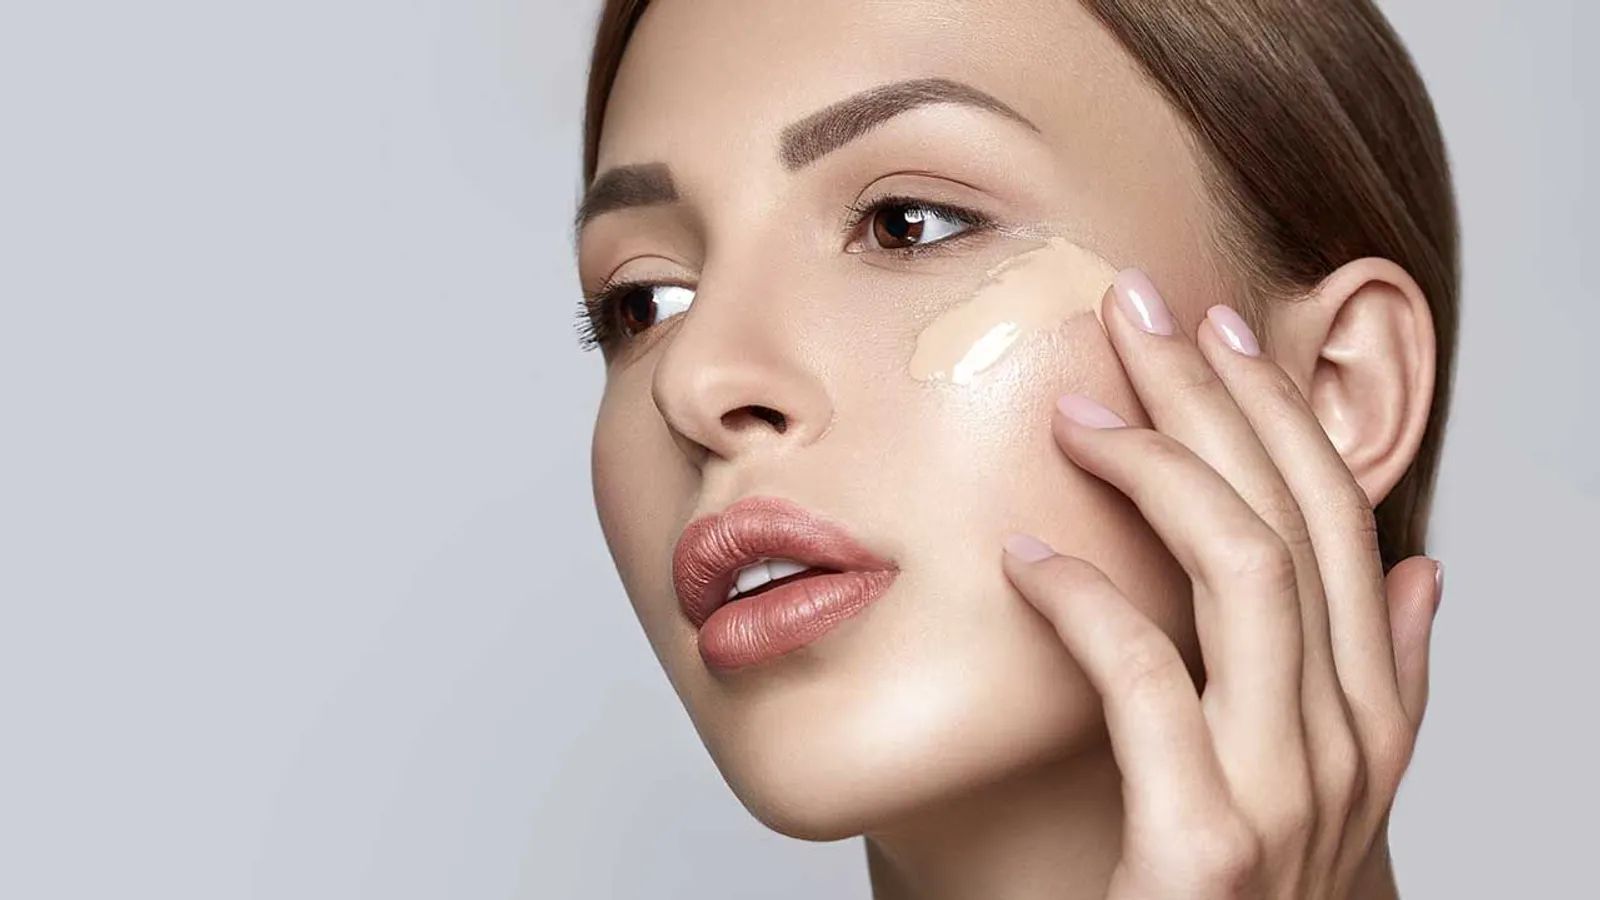 Mudah! 5 Cara Makeup Super Cepat untuk Wajah Terlihat Merona